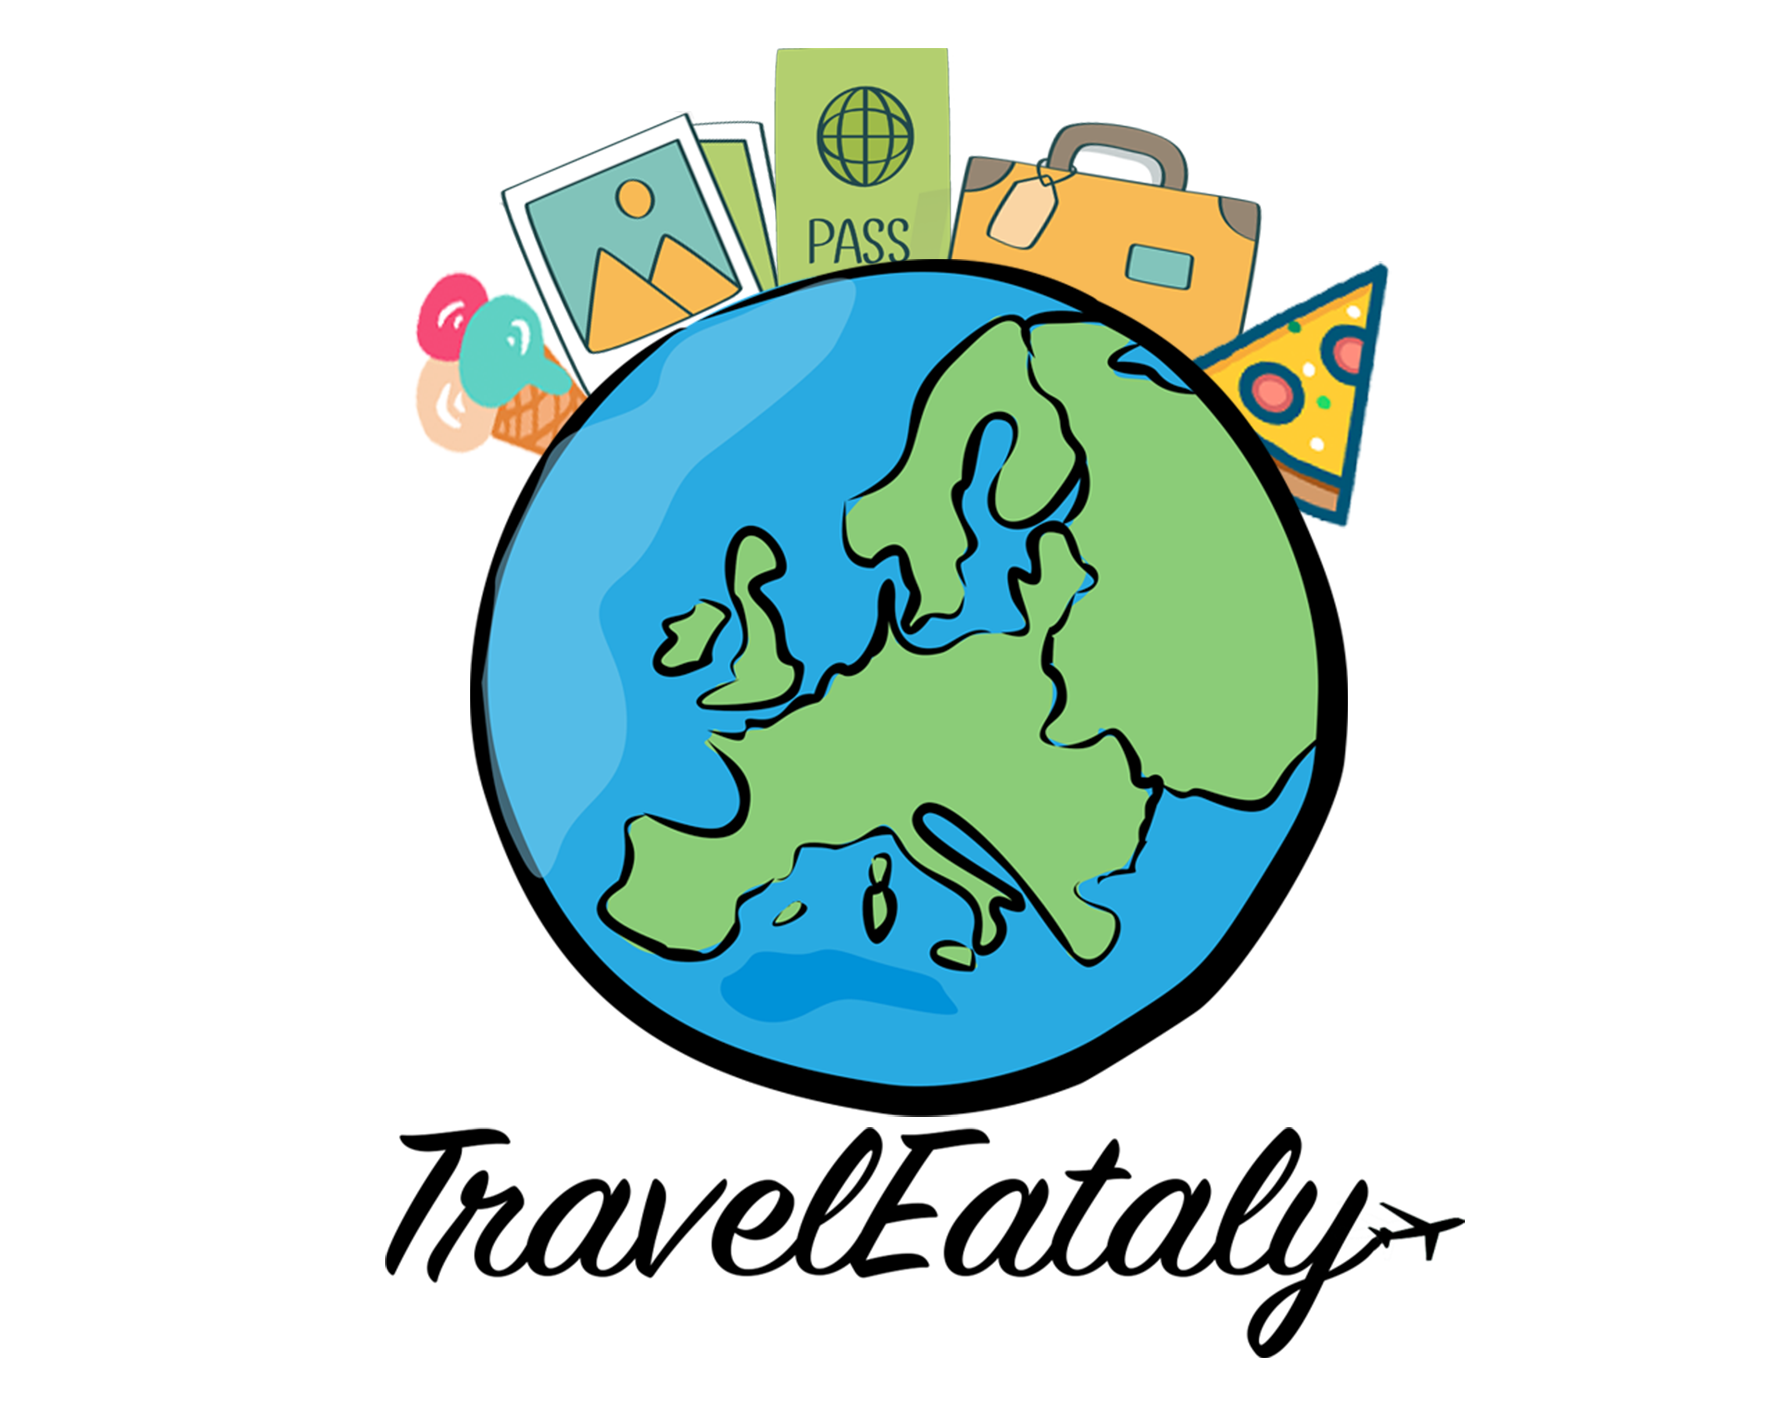 Traveleataly.com